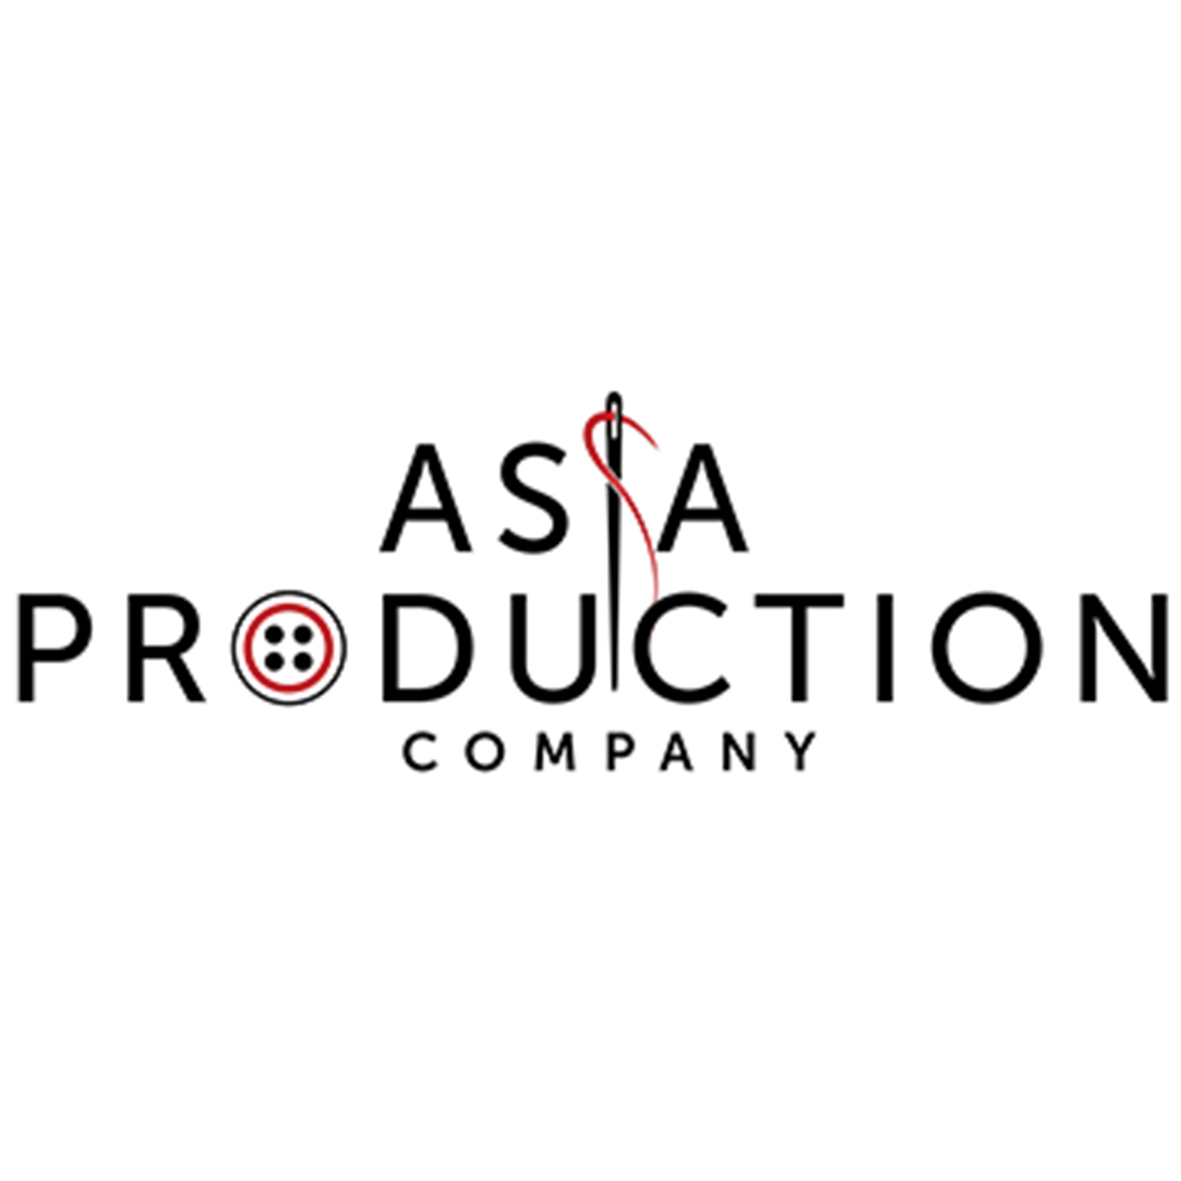 Изображение - Производство одежды в китае Asia-Production